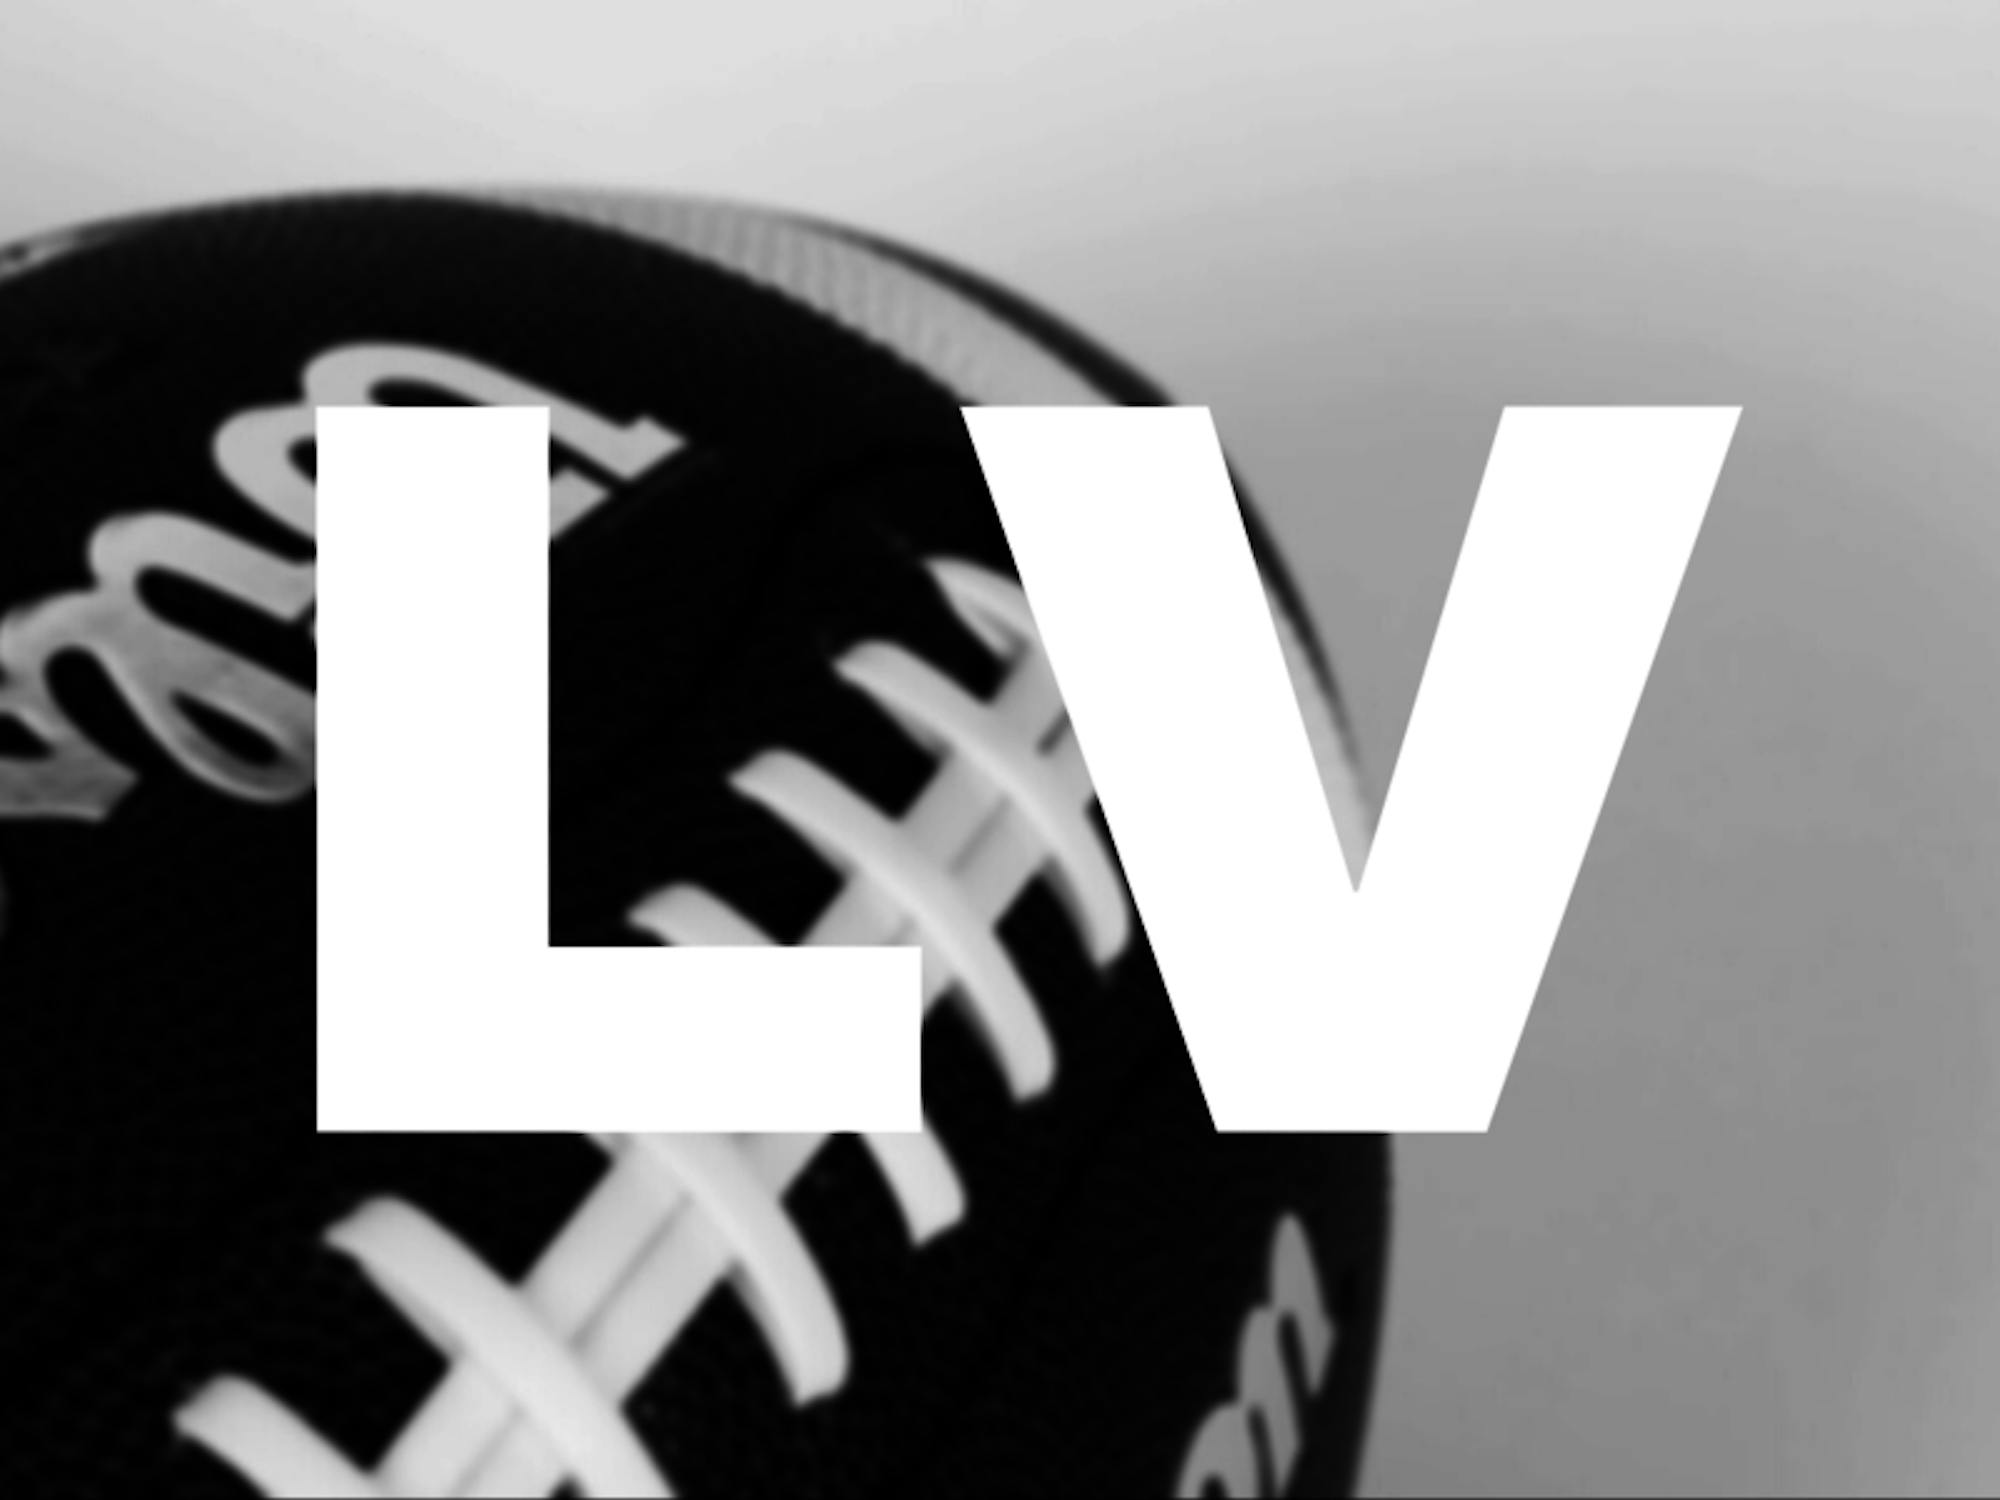 The logo for Super Bowl LV